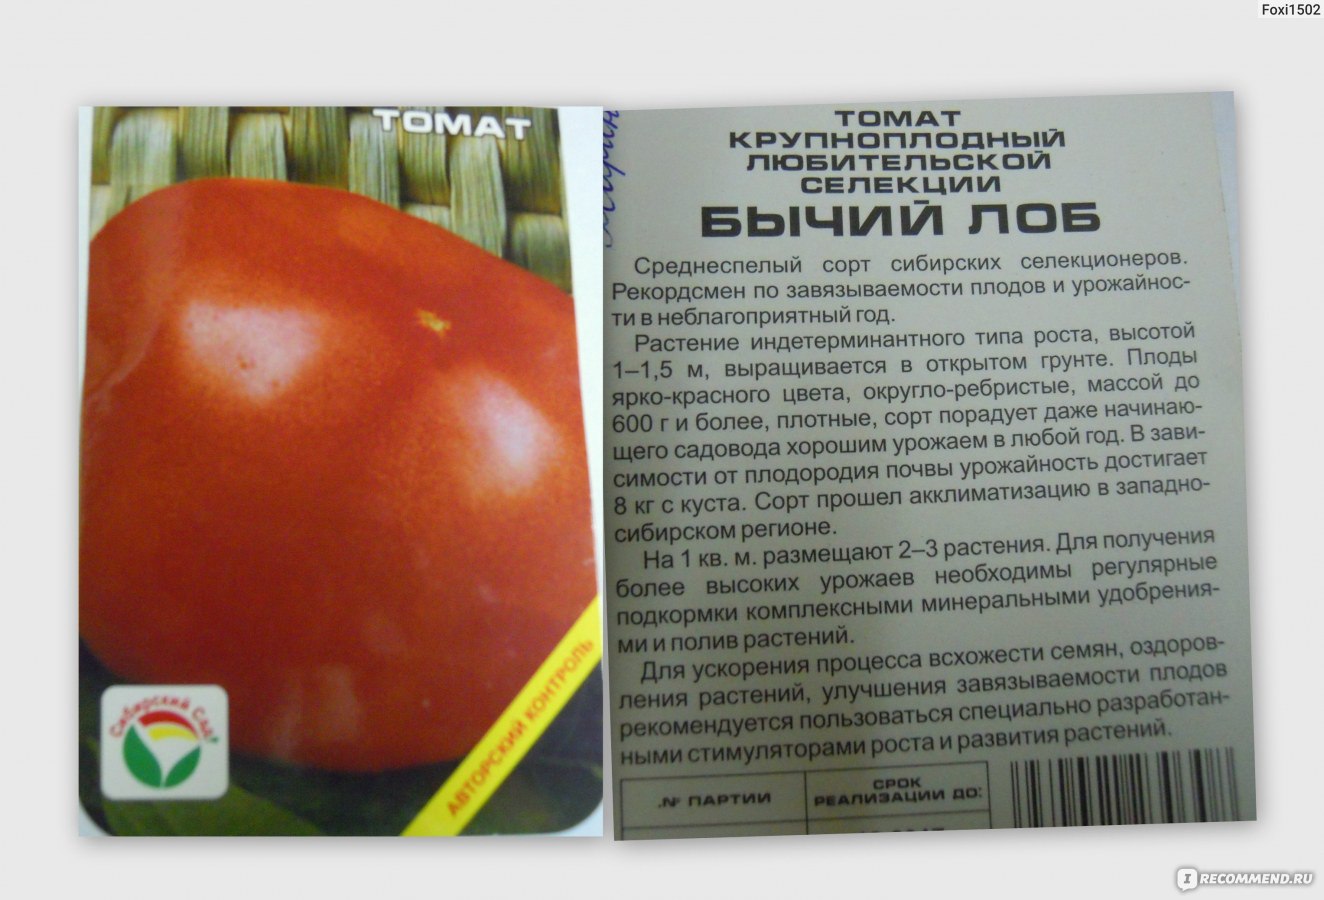 В чем отличие детерминантных и индетерминантных сортов помидоров?